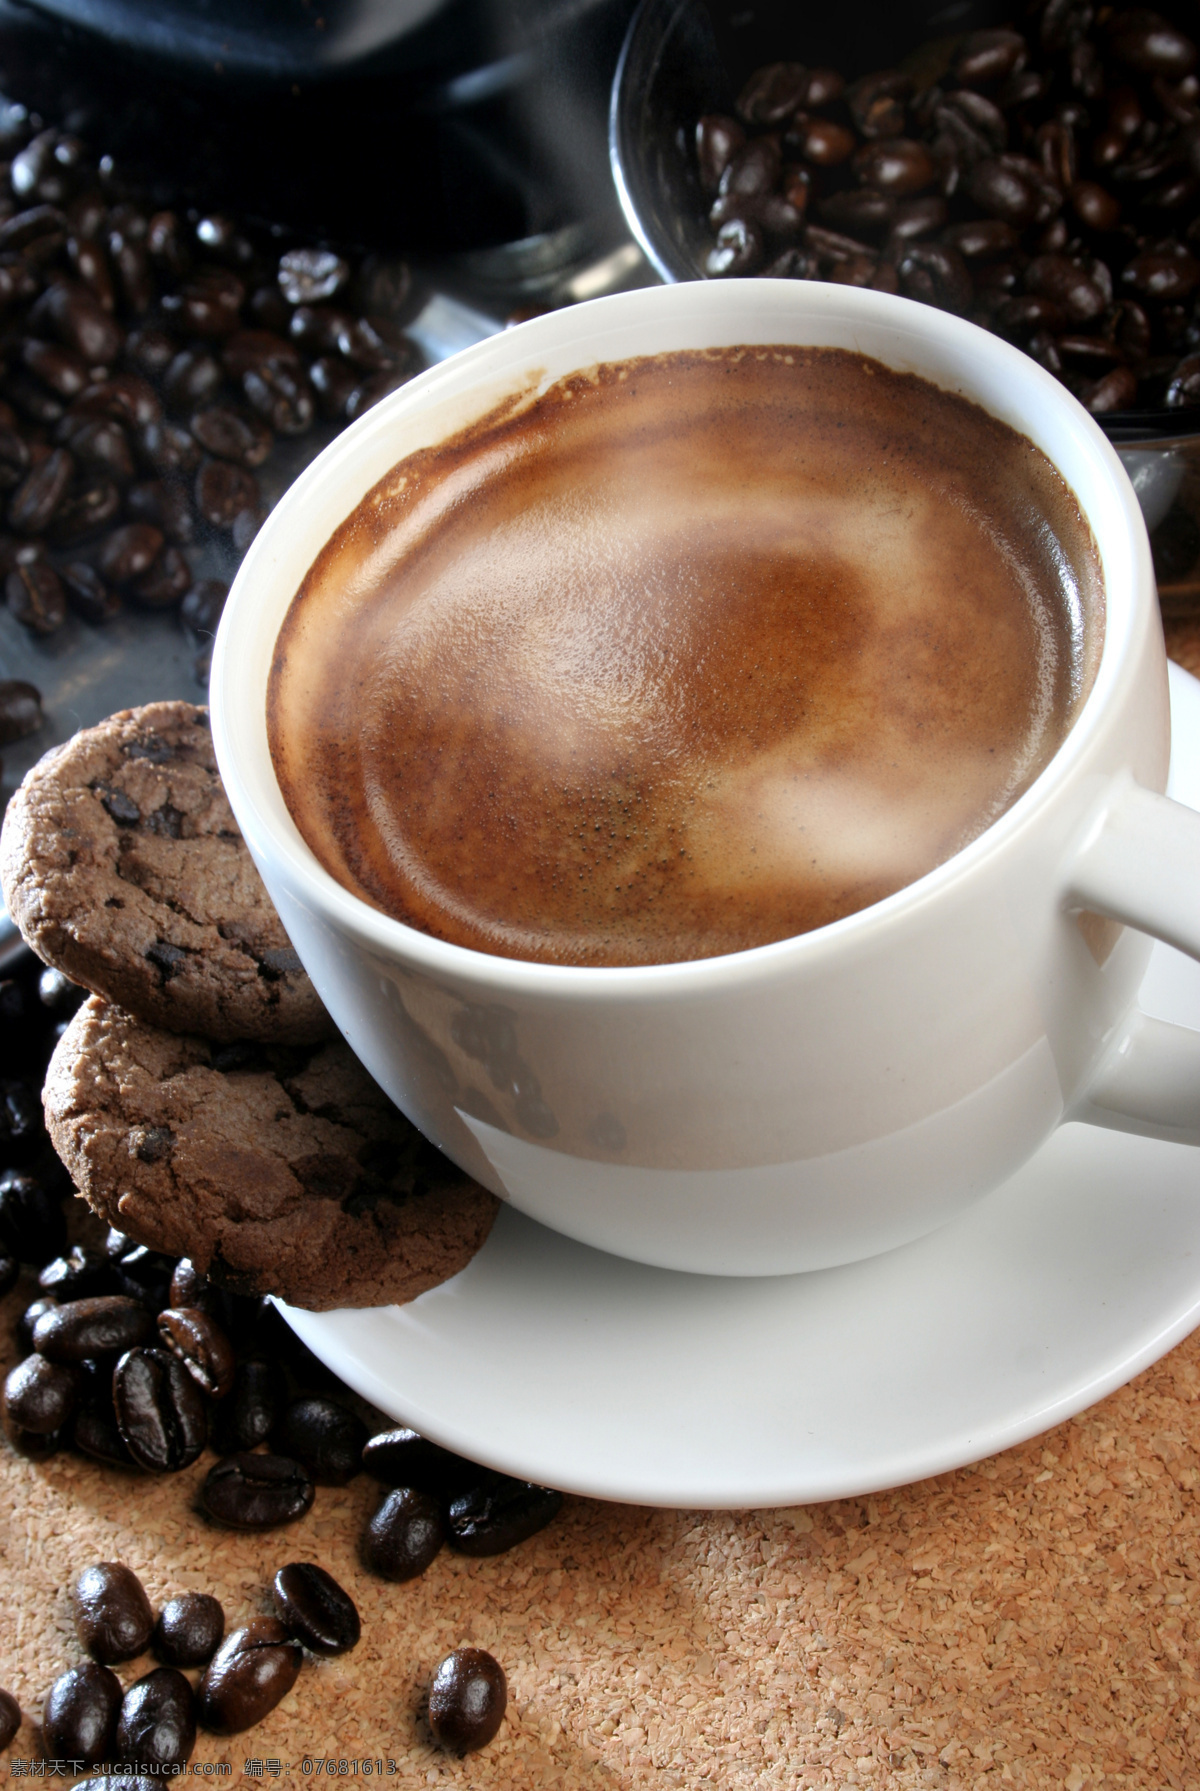 咖啡 咖啡豆 杯子 点心 饼干 香浓 浓郁 休闲生活 品味 温馨 酒水饮料 餐饮美食 咖啡图片